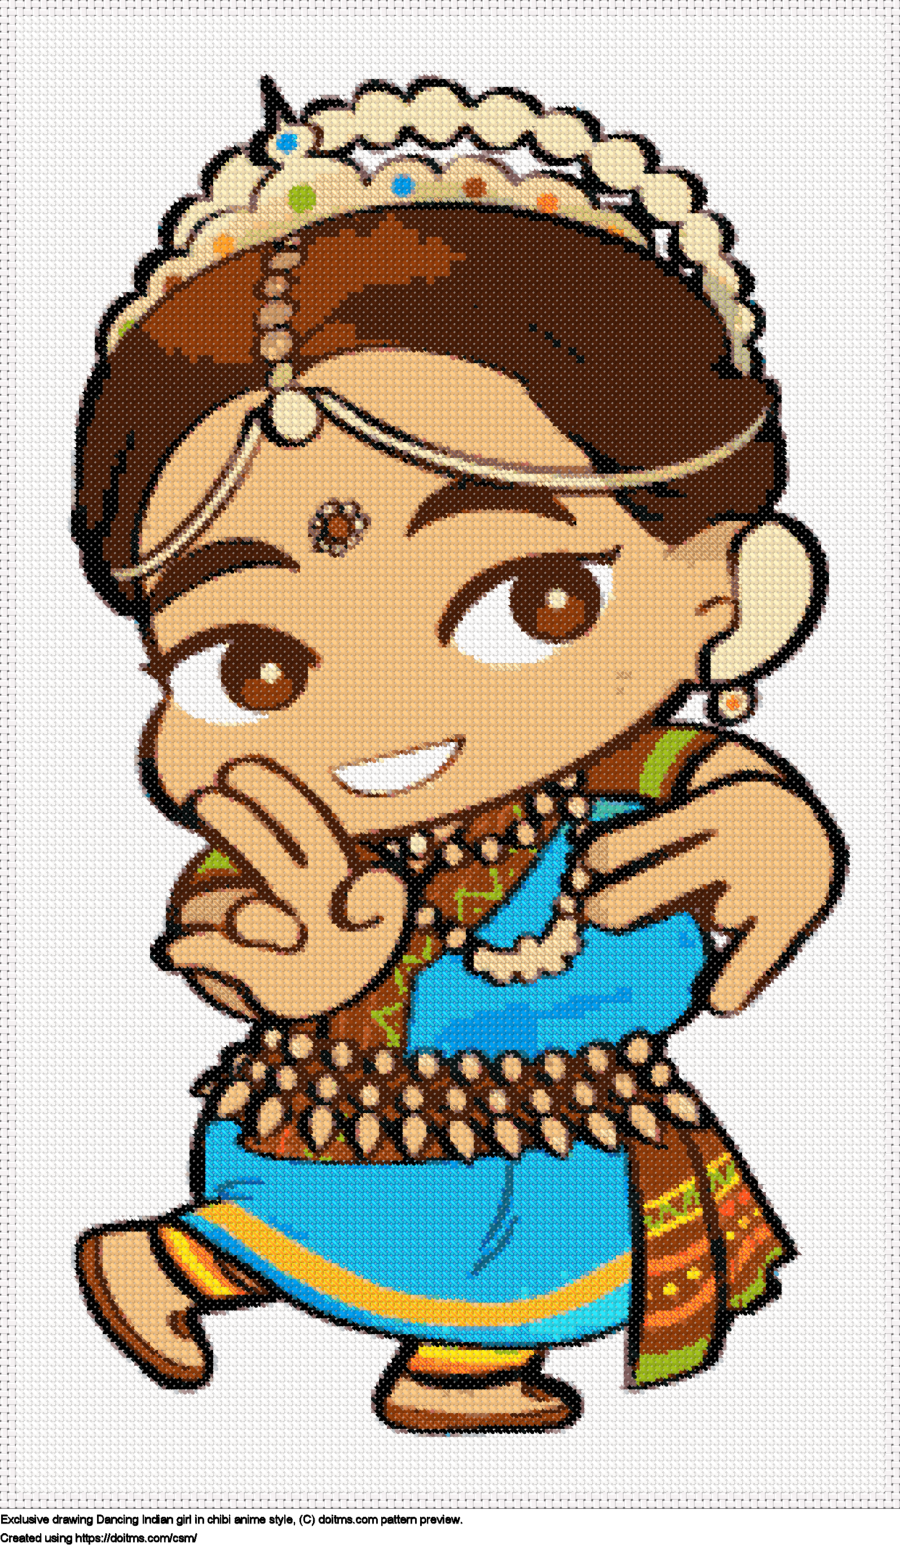 Free Chibi Indian dancing girl cross-stitching design